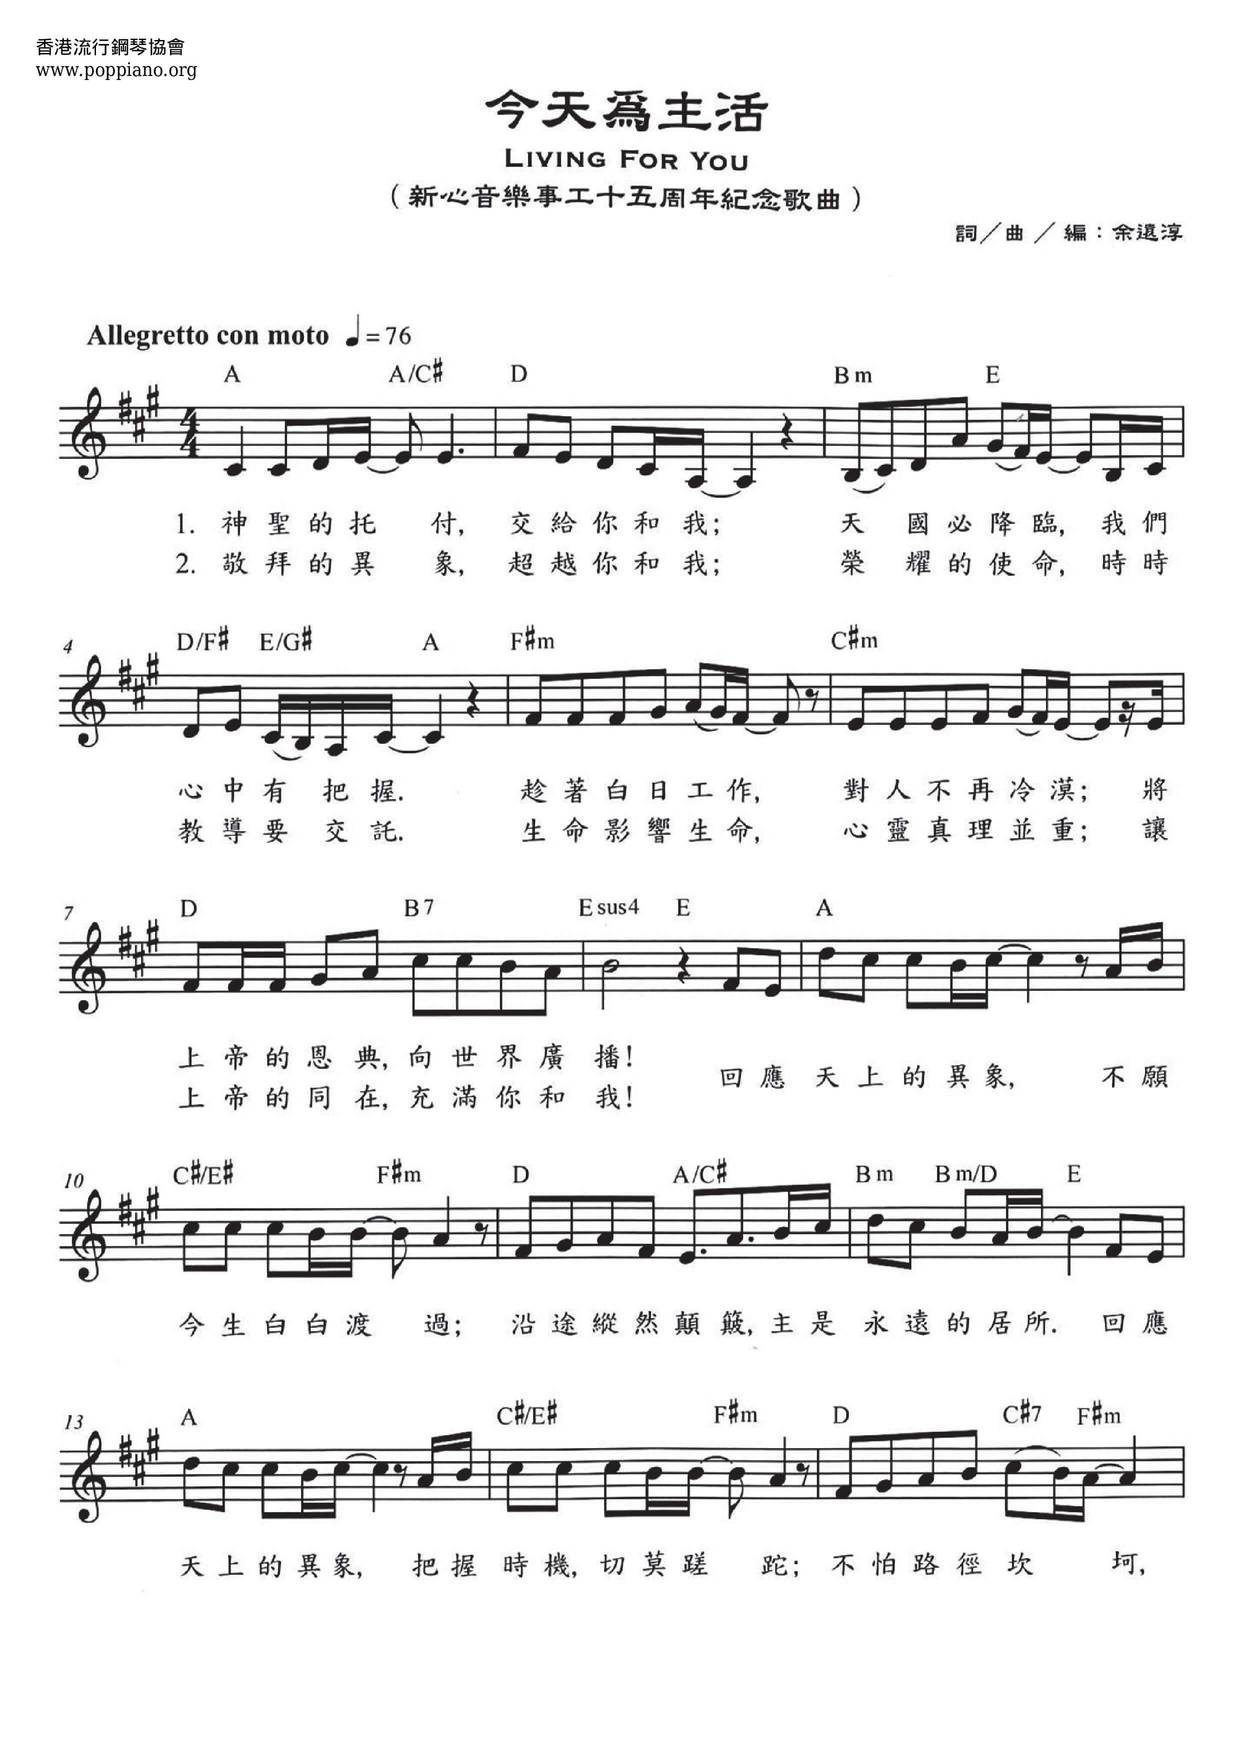 诗歌-今天为主活 琴谱/五线谱pdf-香港流行钢琴协会琴谱下载